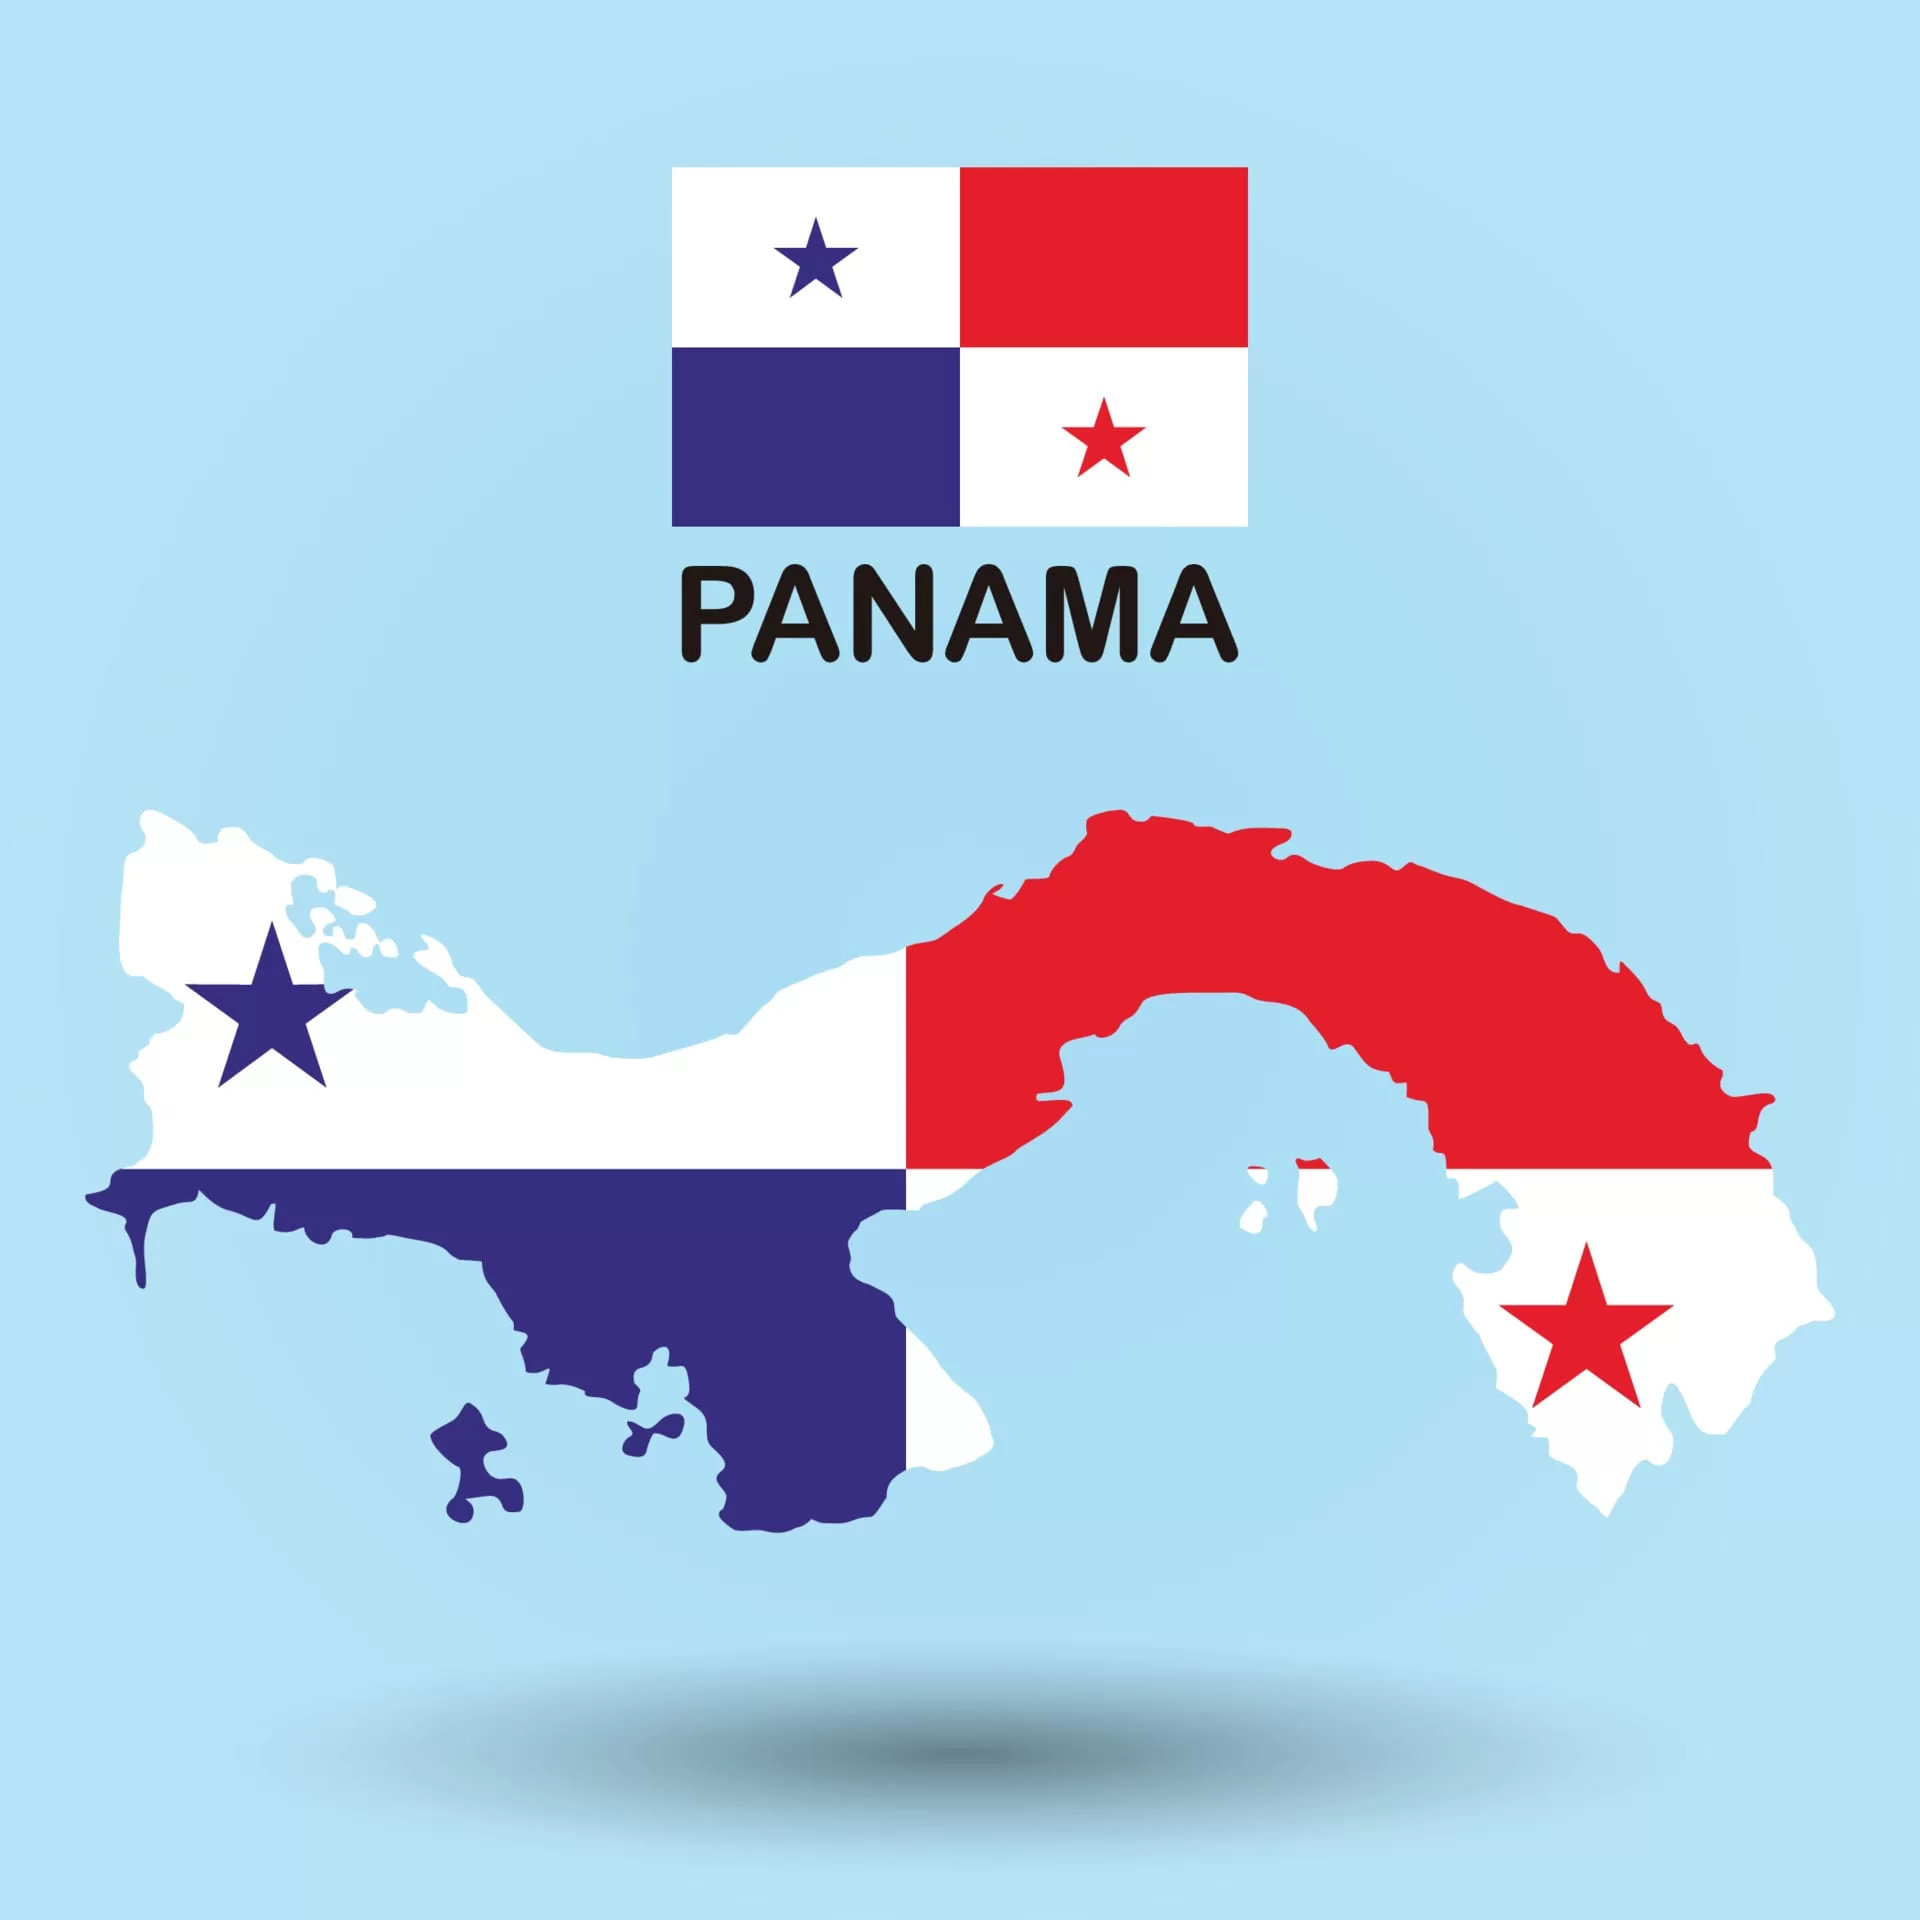 El mapa de Panamá y la bandera de Panamá nos muestran.